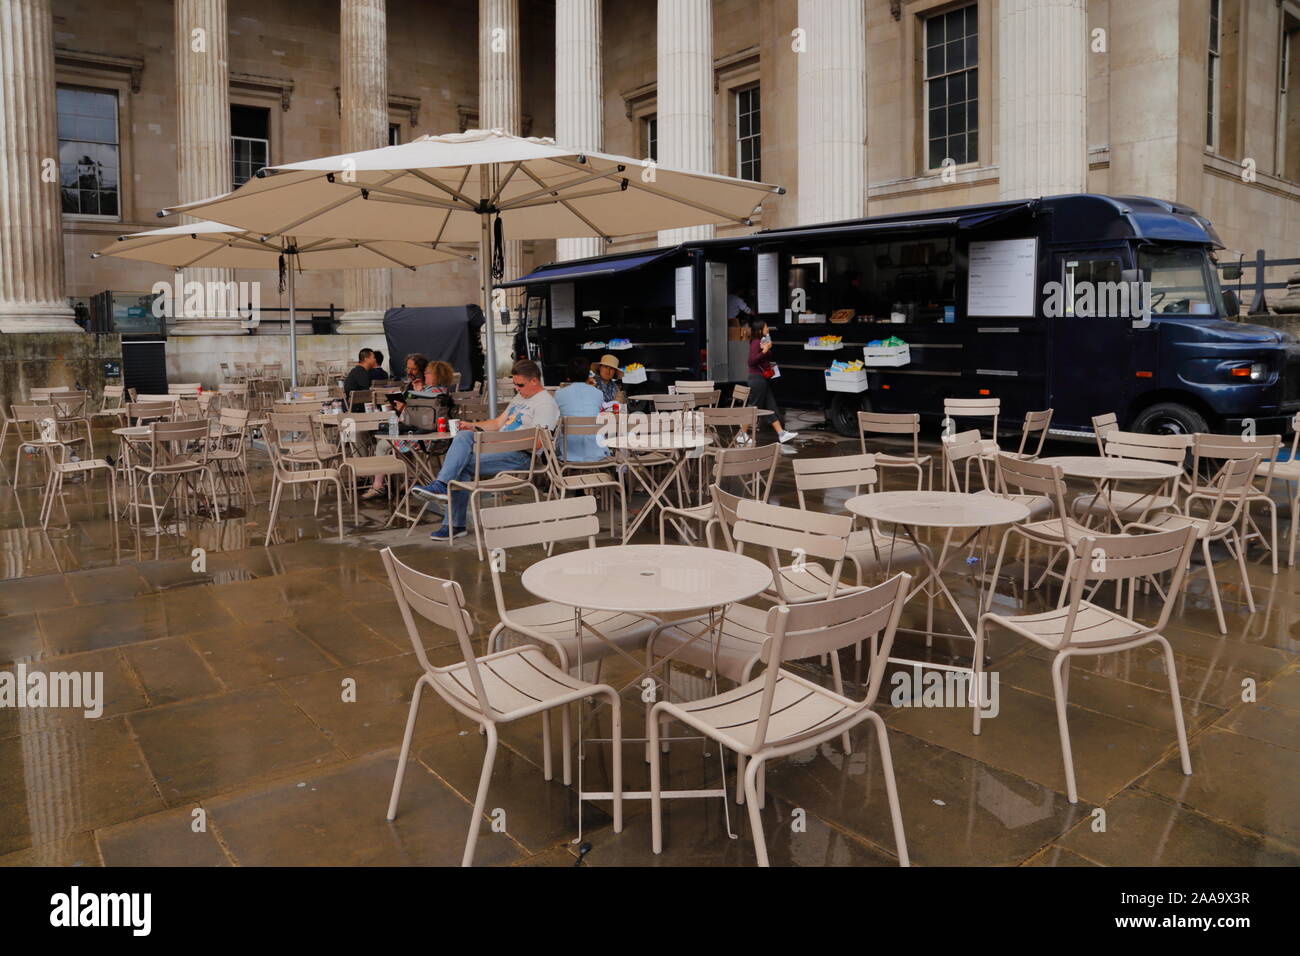 Die Leute sitzen unter einem Sonnenschirm an einem Café im freien Bereich  in der Nähe einer Nahrung Lkw im Britischen Museum in London, Vereinigtes  Königreich, an einem verregneten Sommer Stockfotografie - Alamy